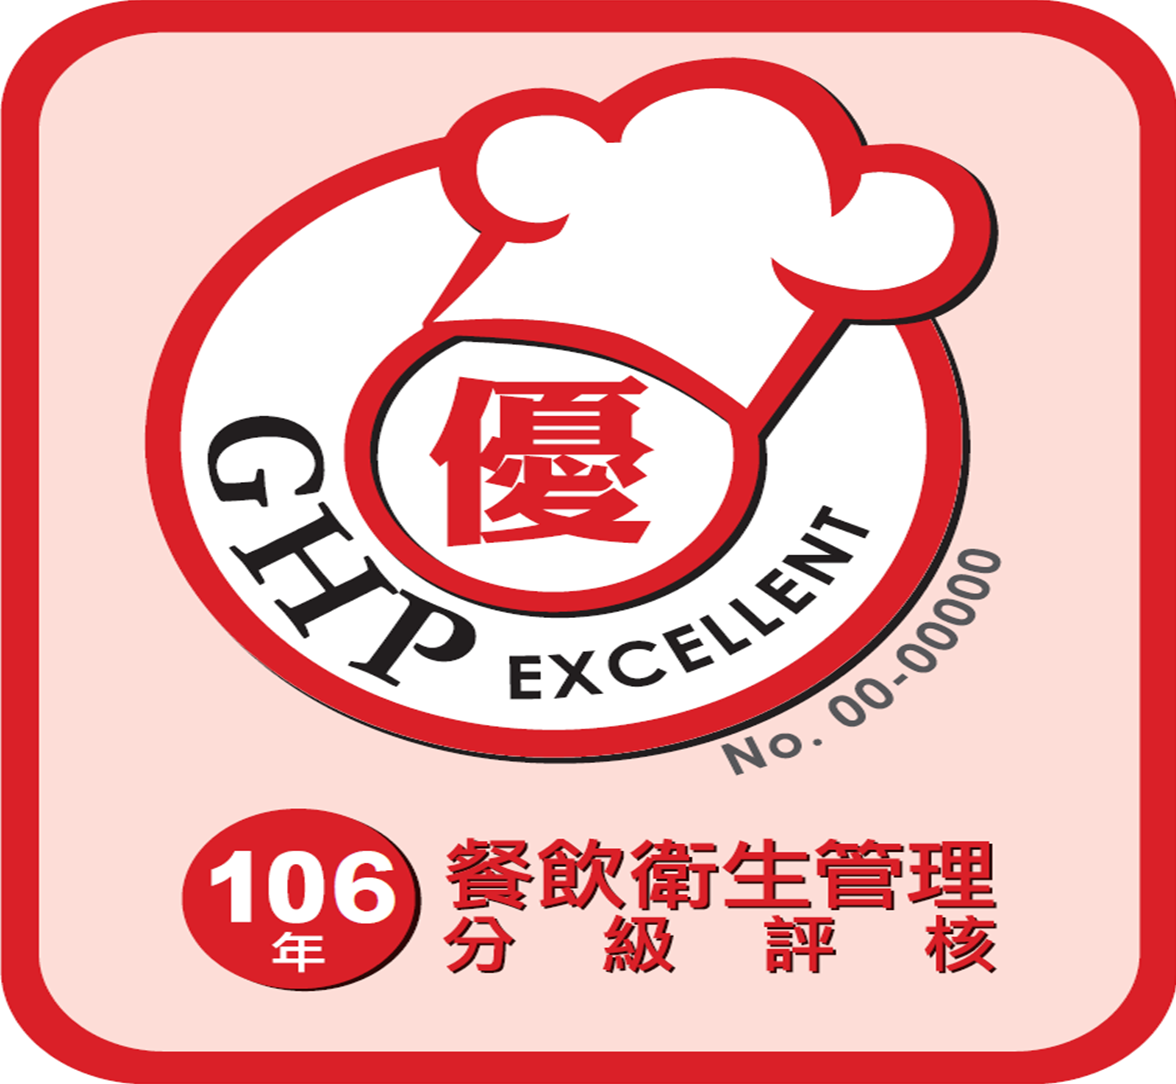 餐飲衛生管理分級評核標章(優)GHP EXCELLENT